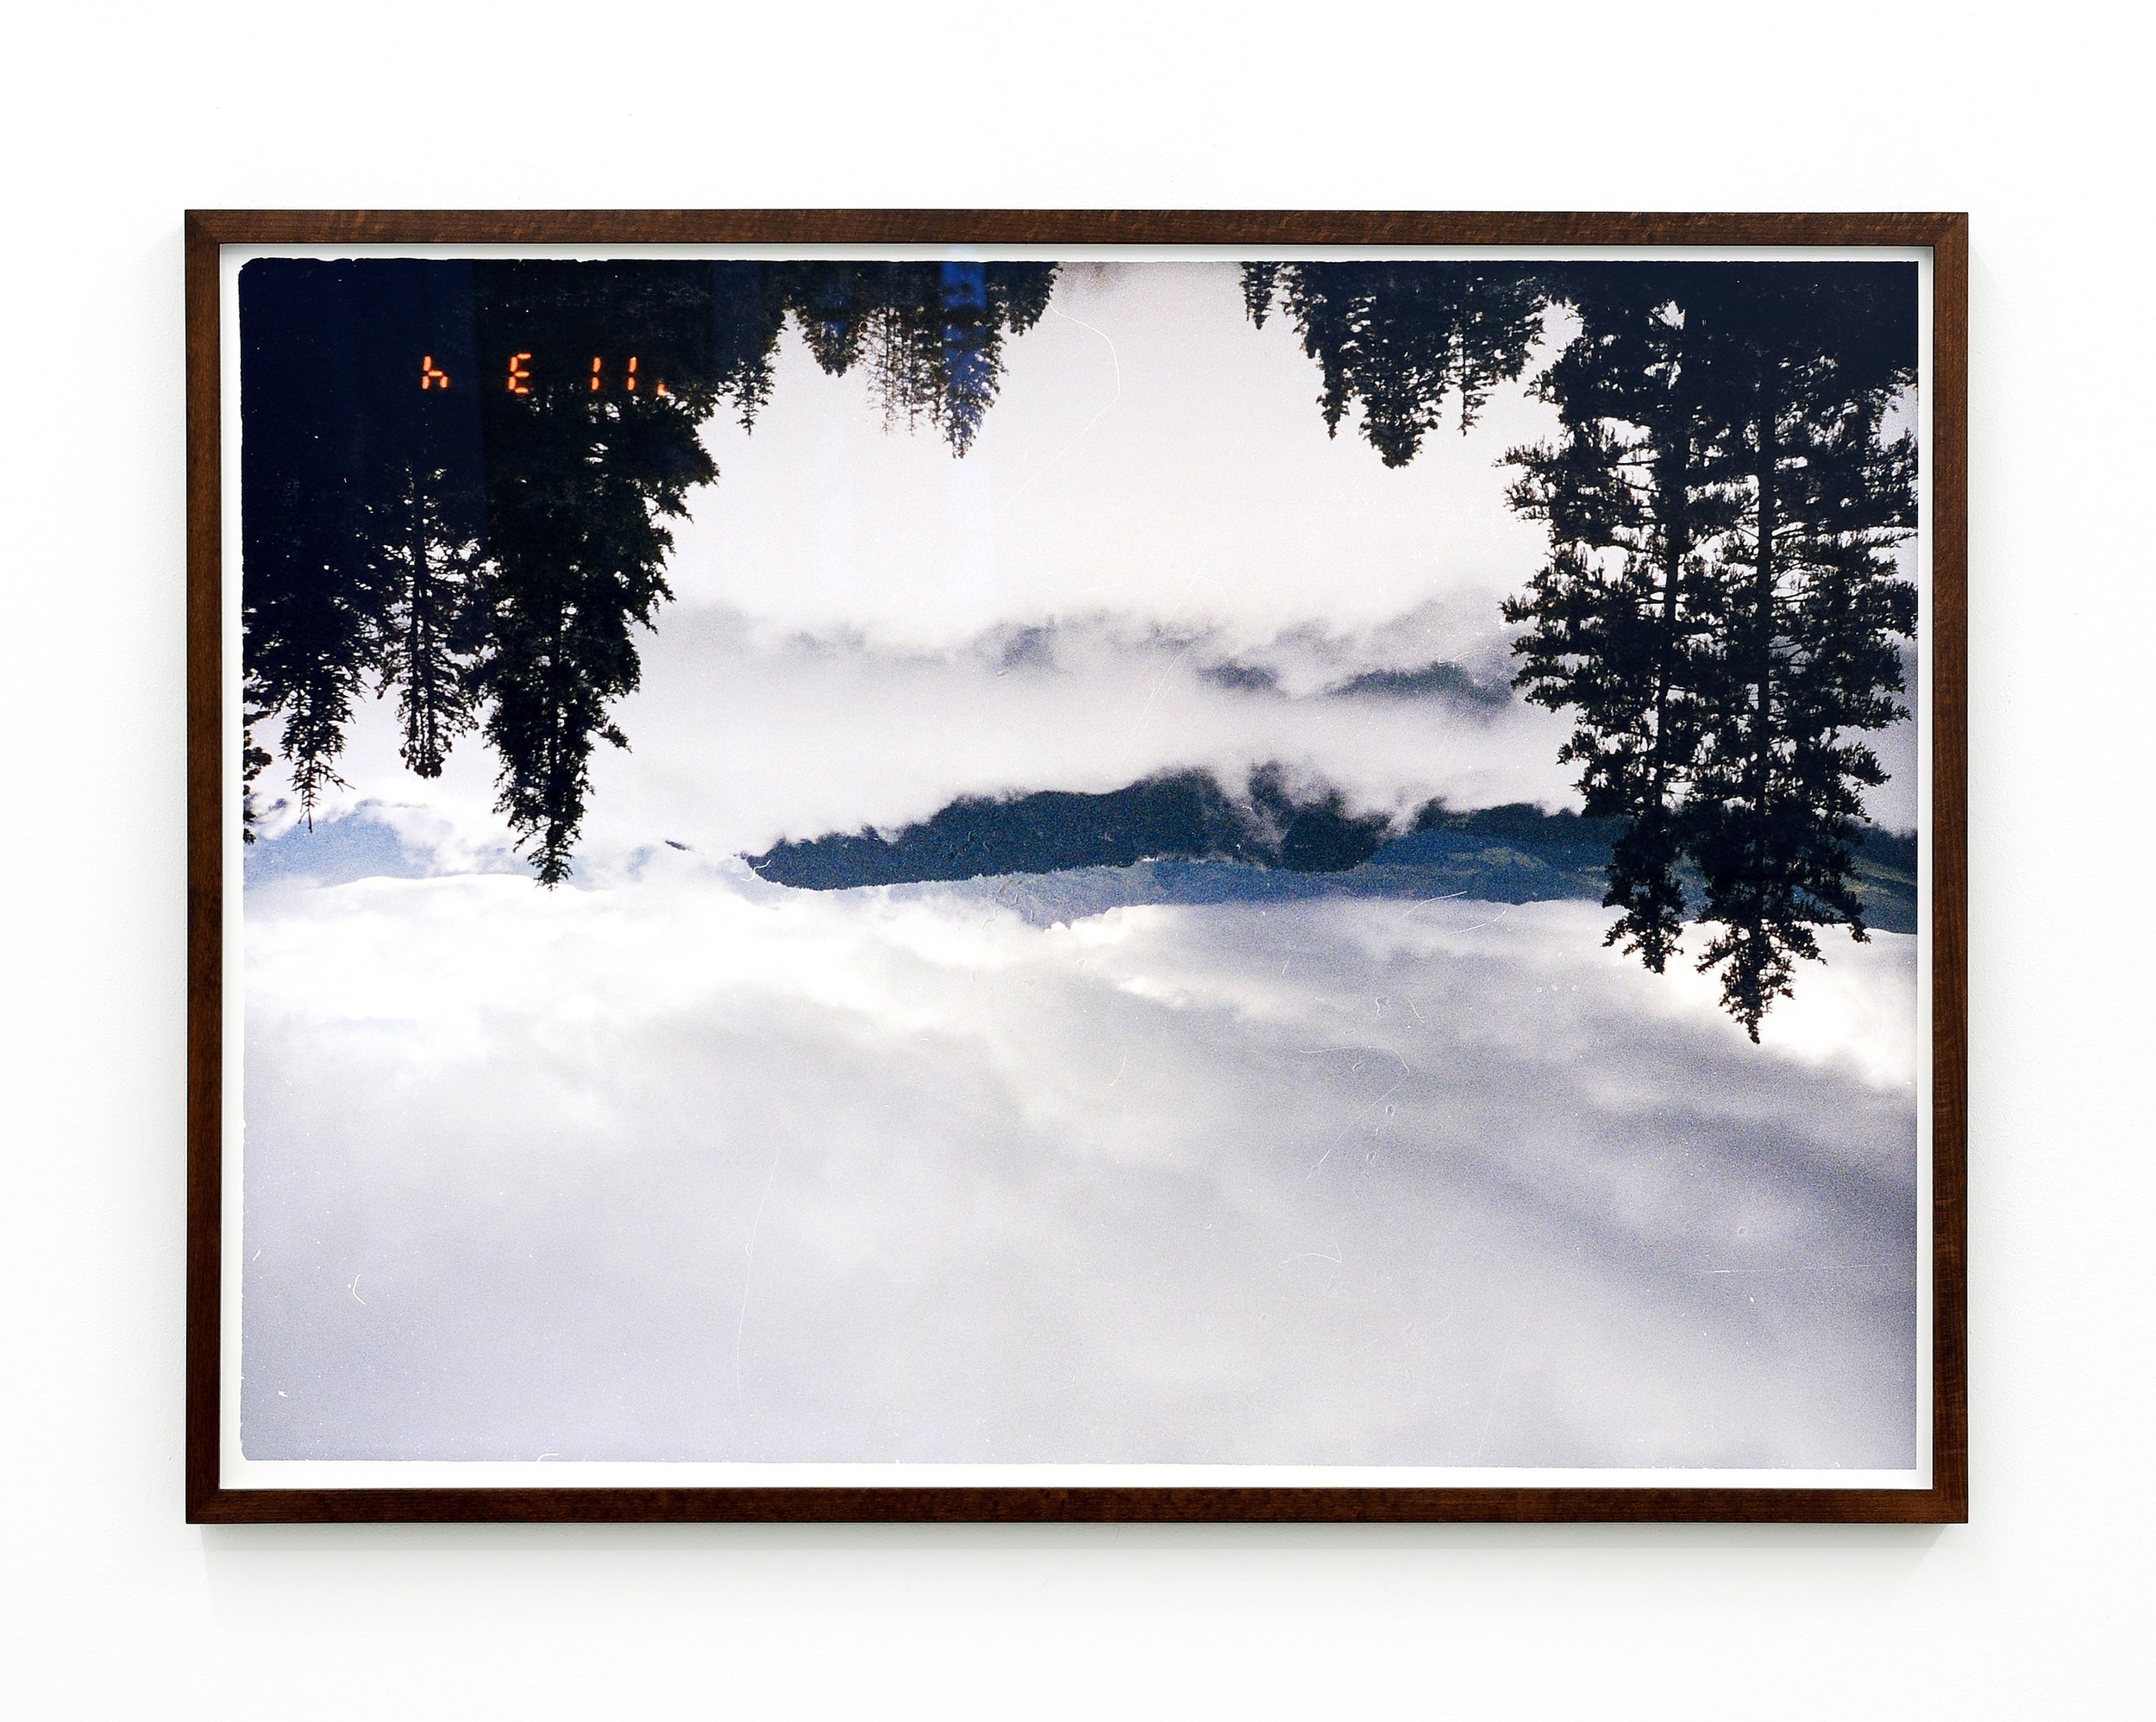   h E ll   2015  C-Print in Artist Frame  30 x 24 inches 